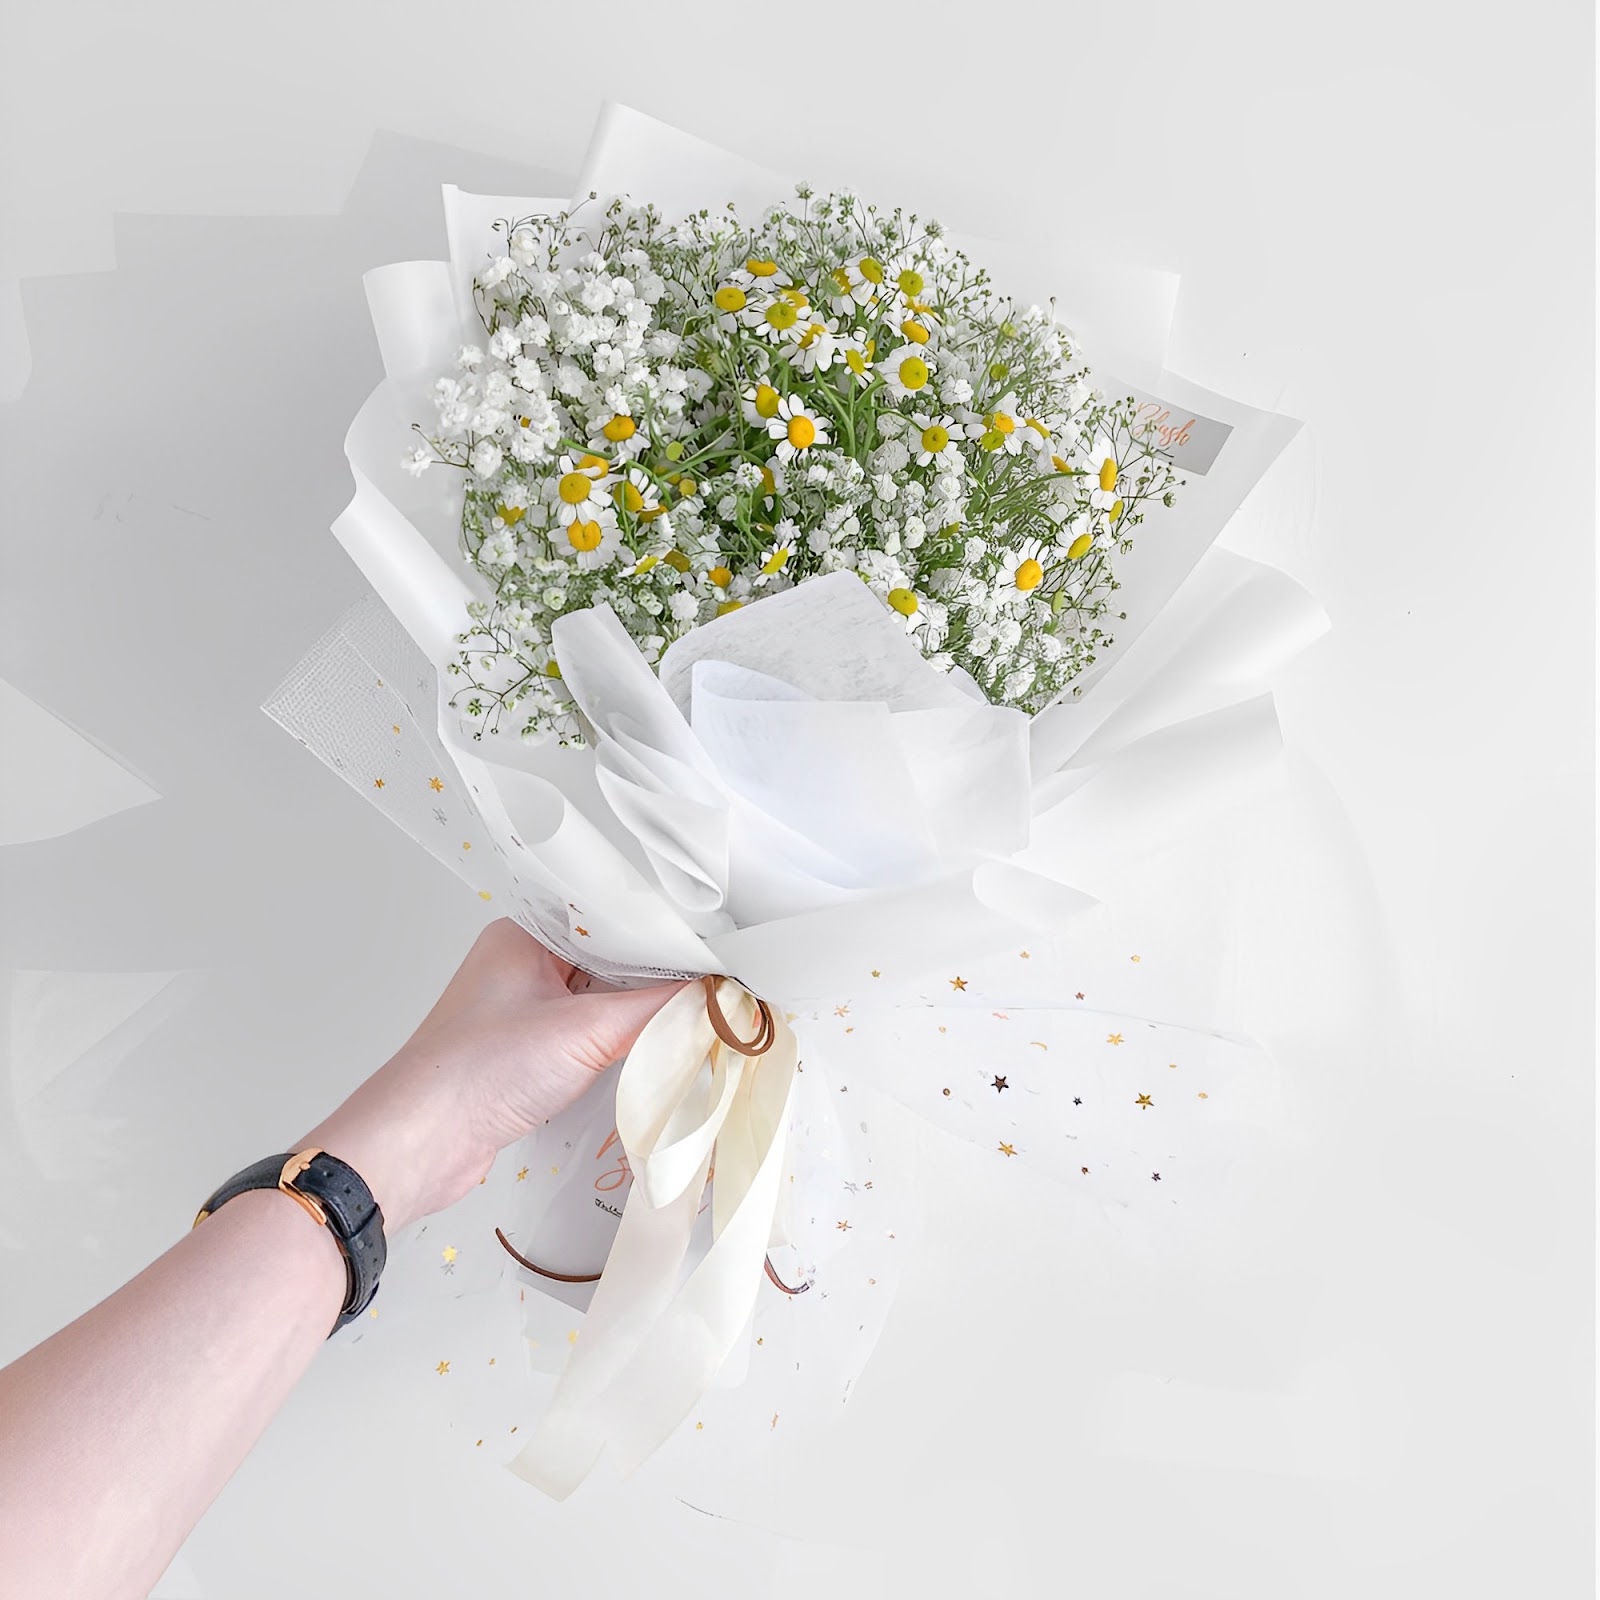 Hoa baby trắng kết hợp cùng cúc họa mi cực đẹp